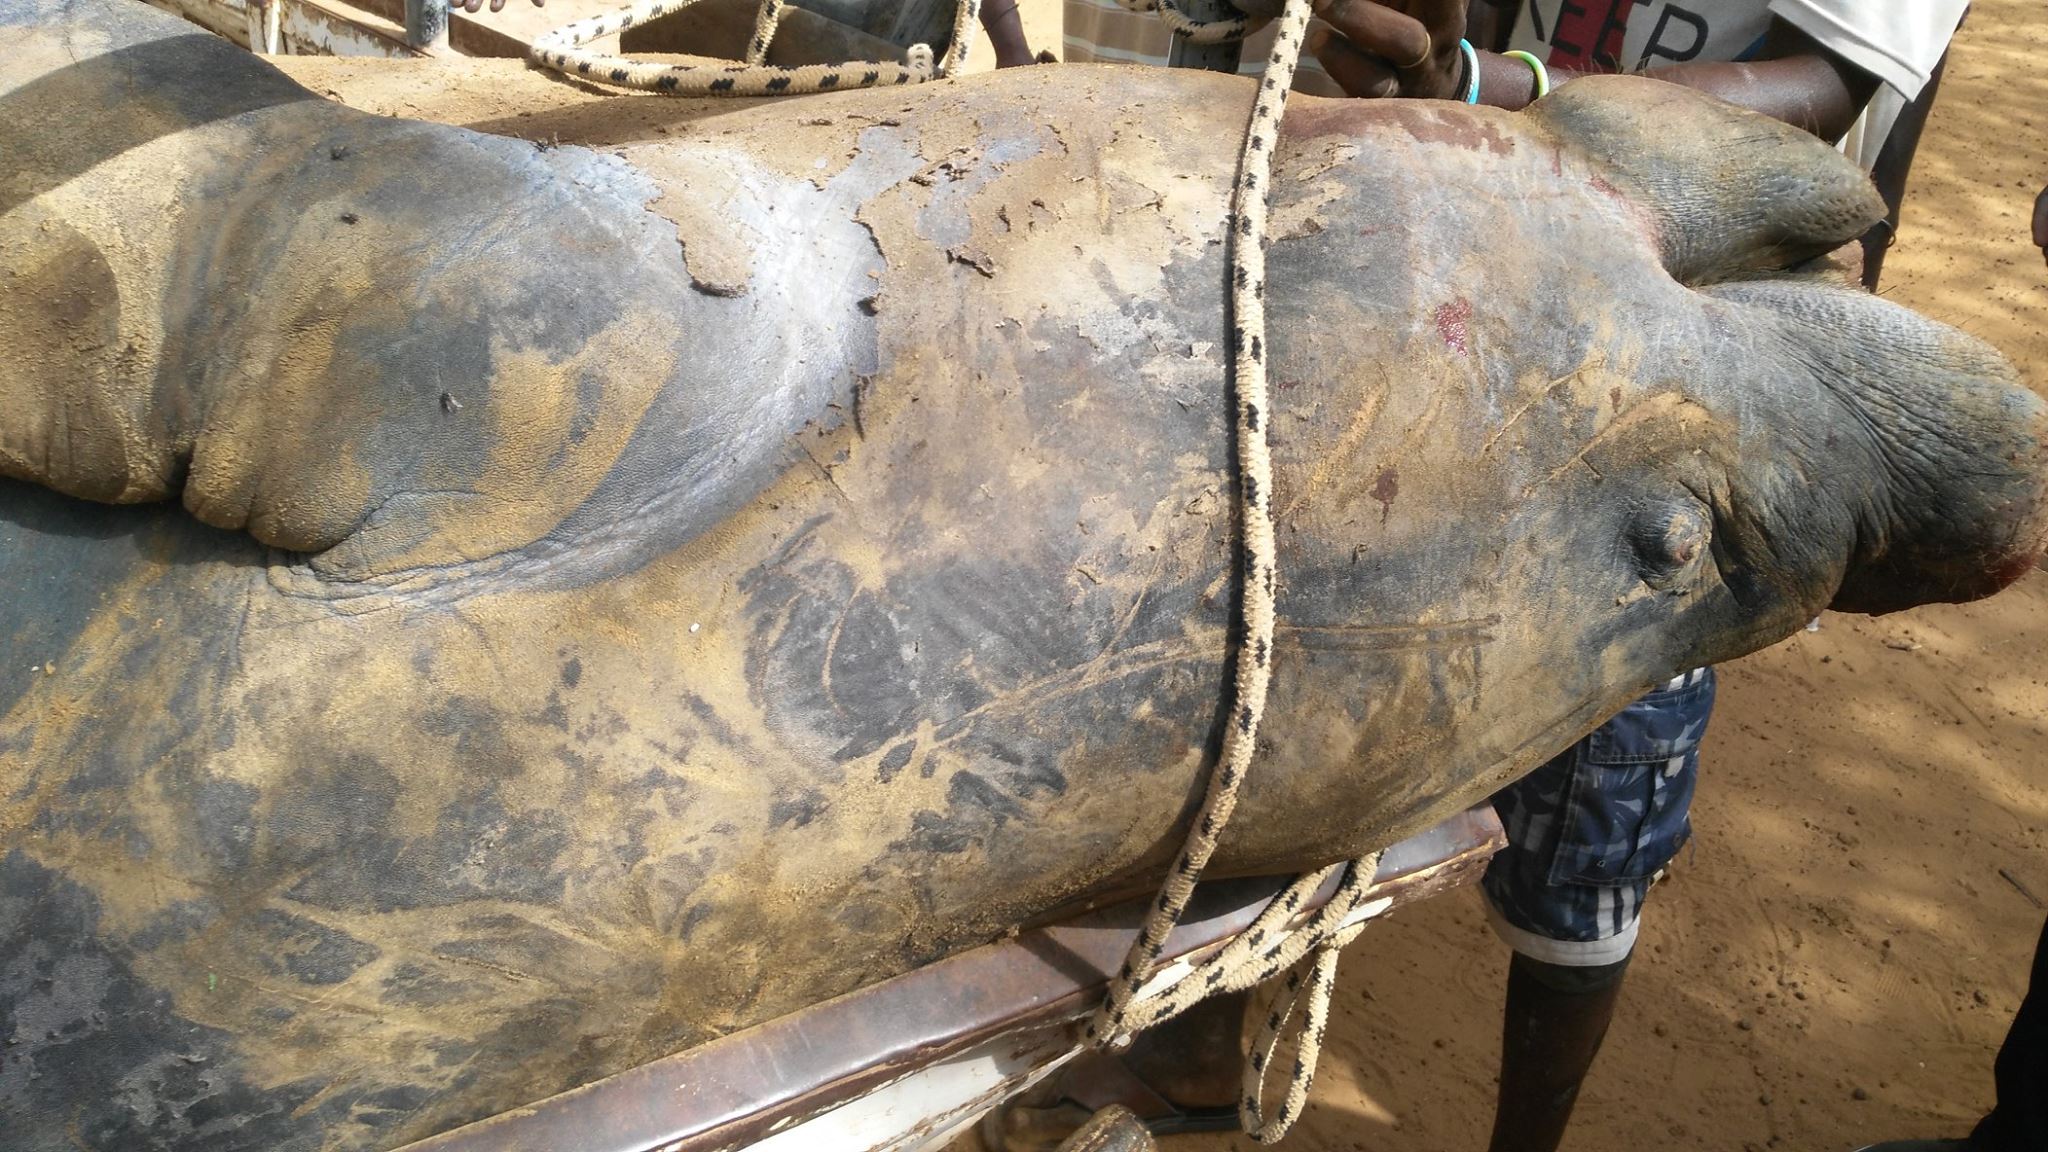 RICHARD-TOLL: Un énorme lamantin mort échoue sous le pont de la rivième Taouey (Photos)